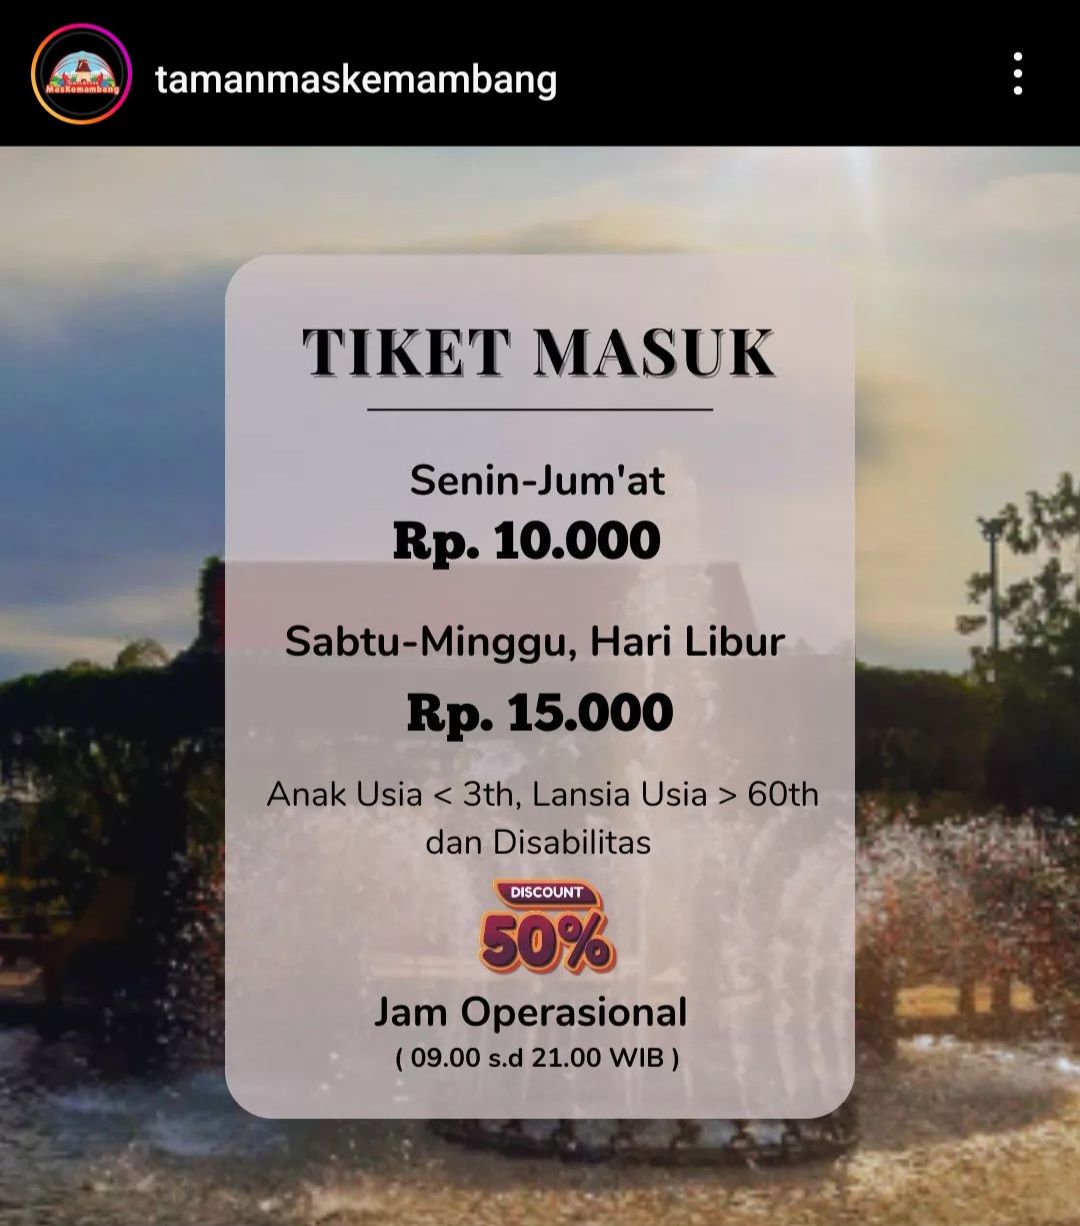 HTM Taman Mas Kemambang Purwokerto. *